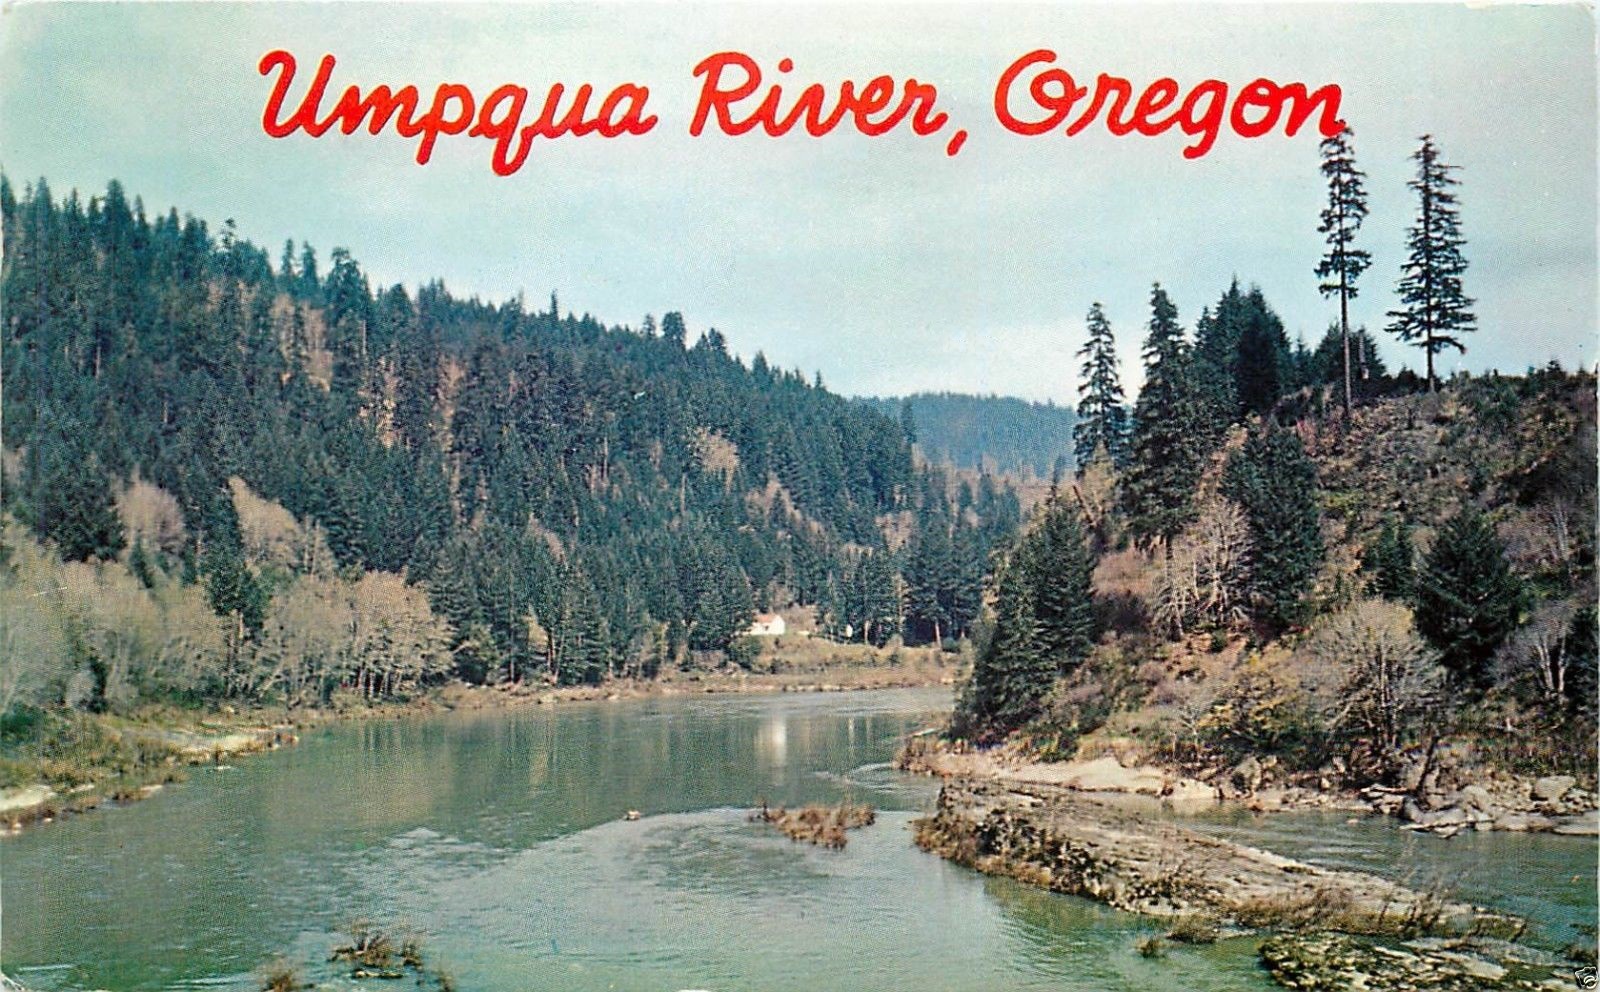 Umpqua River, 1960s